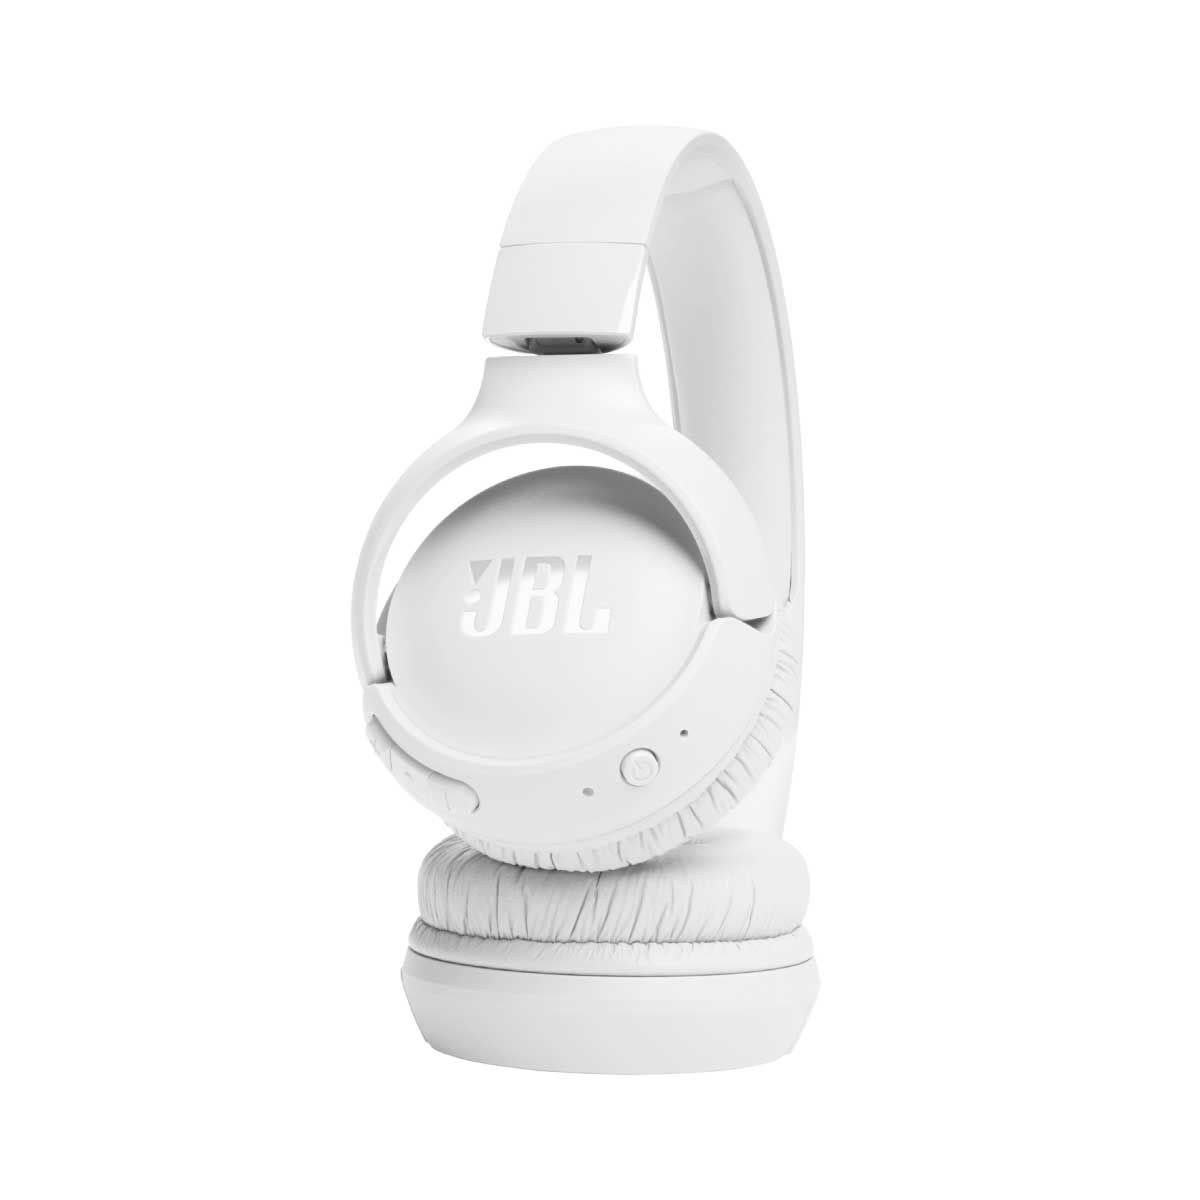 หูฟัง JBL Tune รุ่น TUN520BTWH WHITE สีขาว